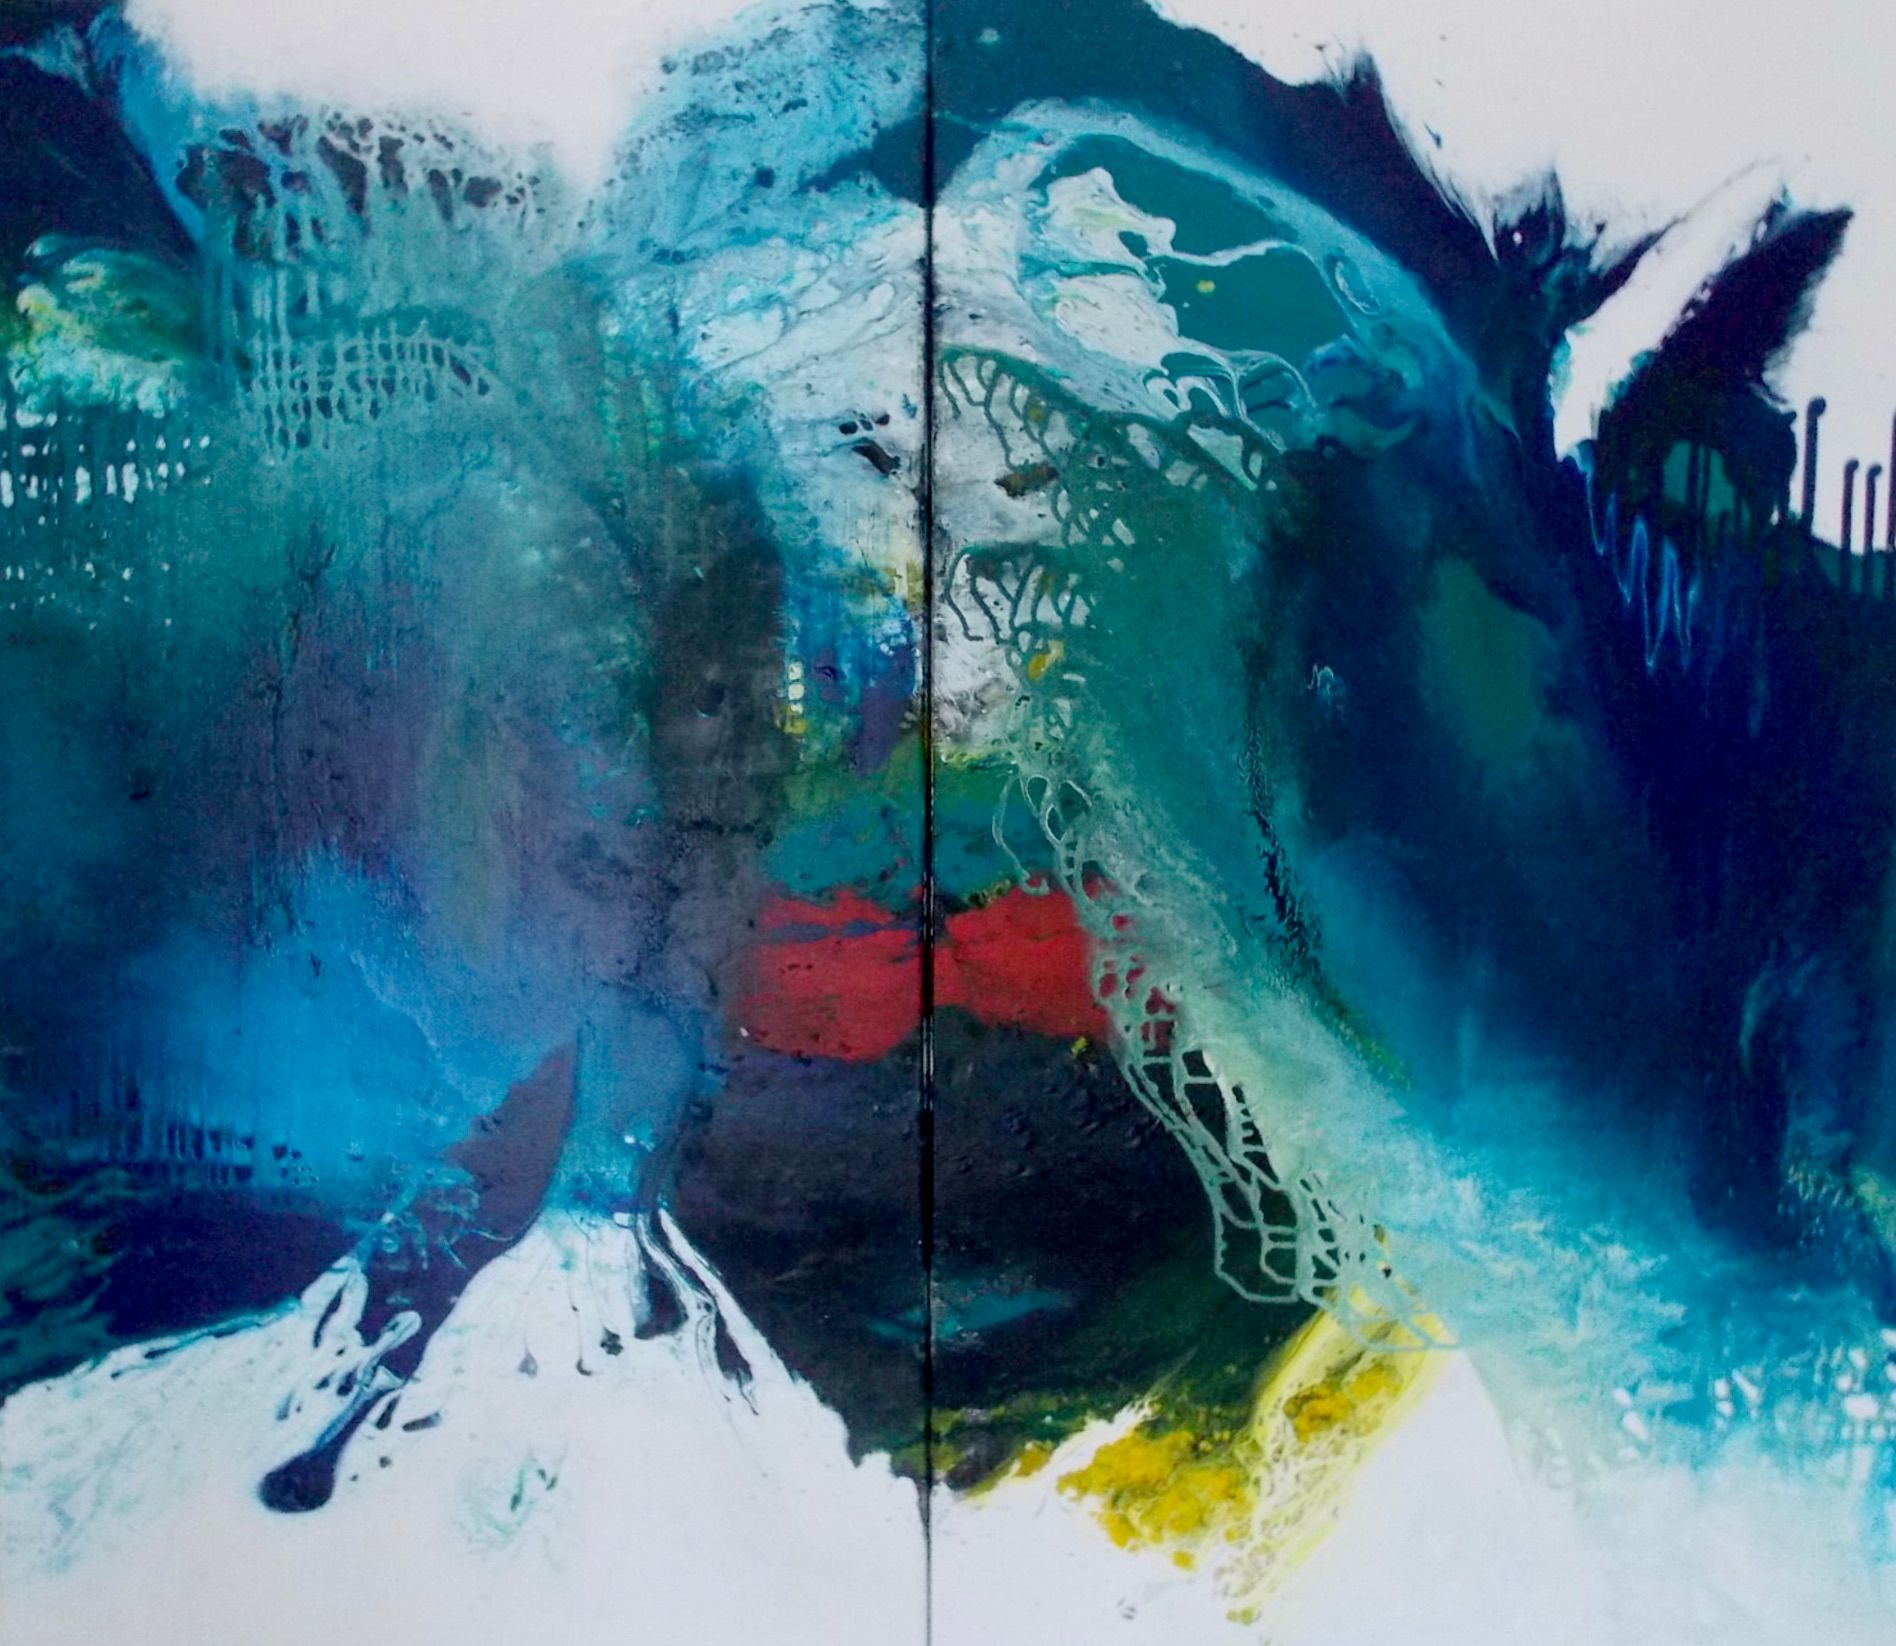 Christa Haack's "Reconnaissance bleue 1 + 2 - diptyque -" Cette peinture abstraite se compose de deux tableaux assemblés. Les couleurs sont principalement le bleu, le turquoise, le vert, avec un peu de rouge et de jaune.